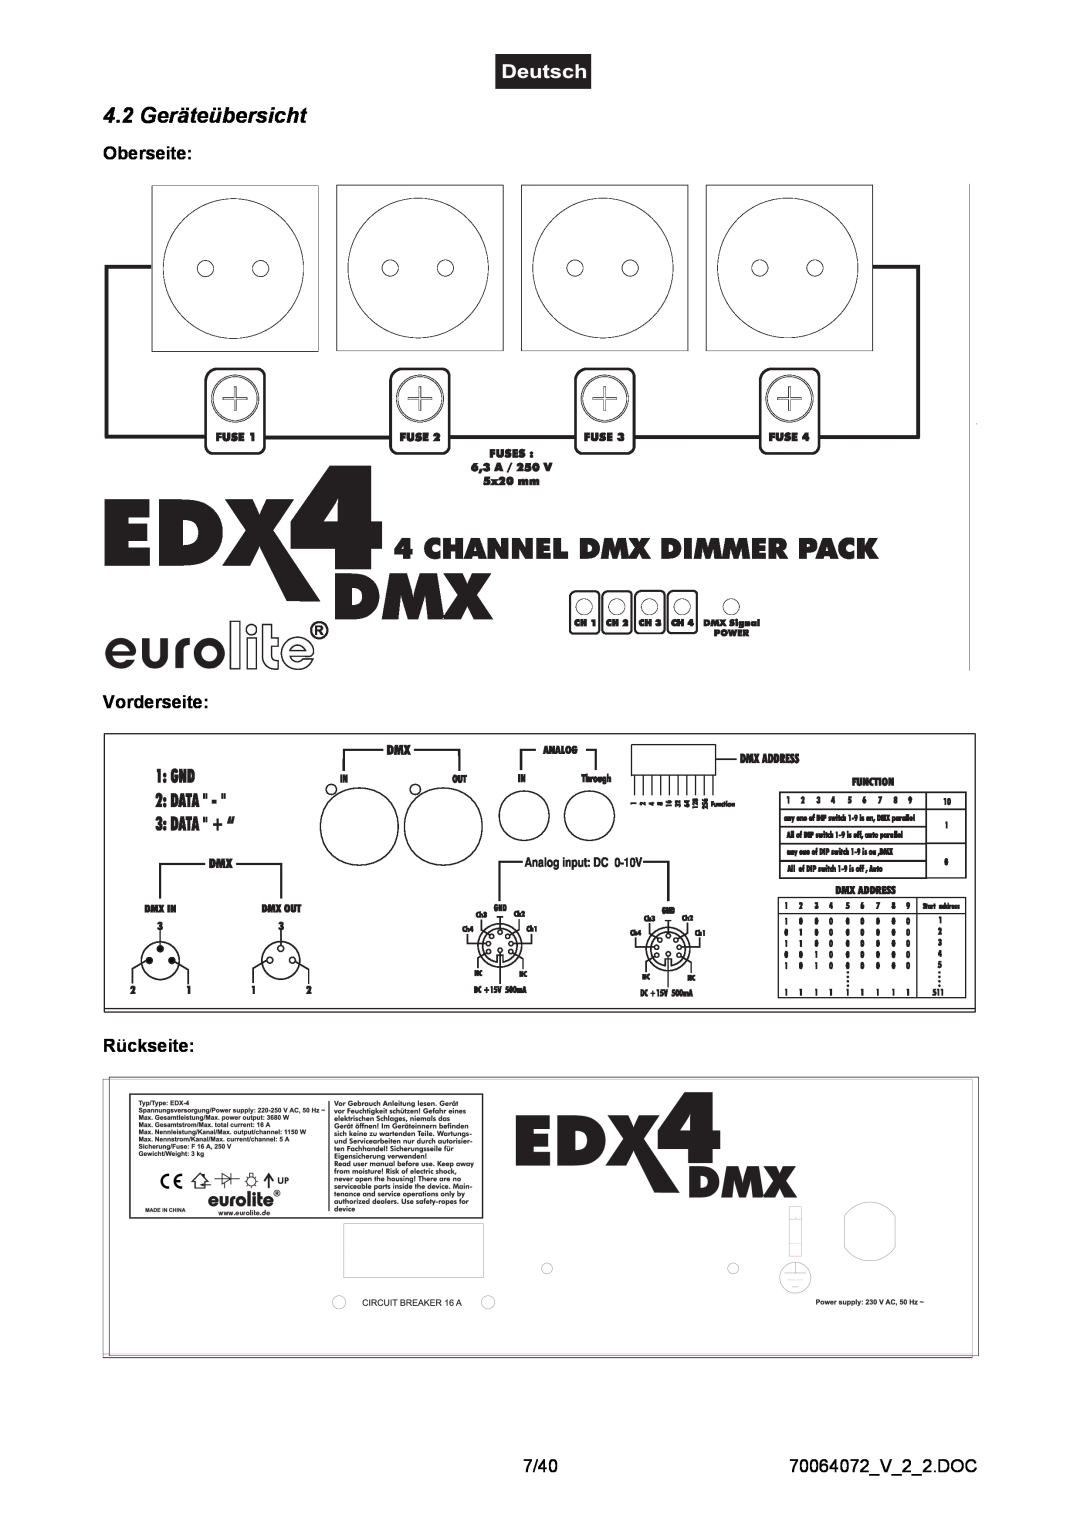 EuroLite Cases 4-channel DMX dimmer pack, EDX-4 user manual 4.2 Geräteübersicht, eurolite, Oberseite Vorderseite Rückseite 